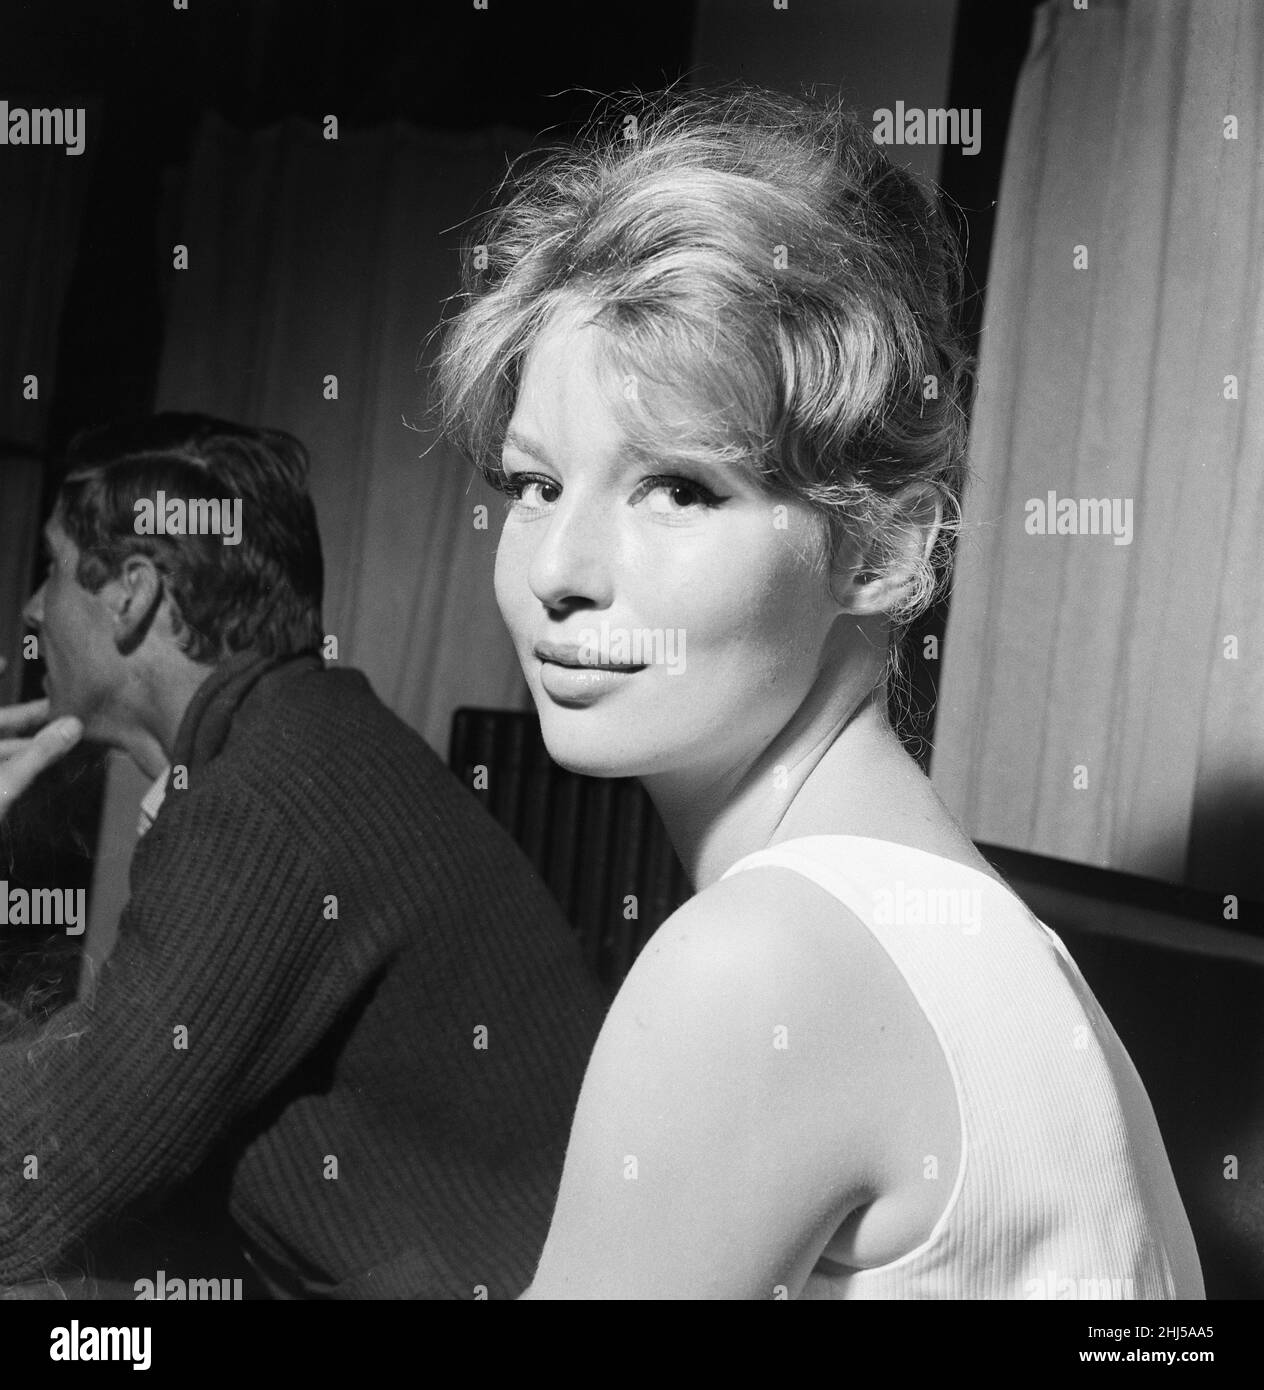 Festival de Cannes 1958.Notre photo montre ...Annette Stroyberg, actrice danoise, samedi 10th mai 1958. Banque D'Images